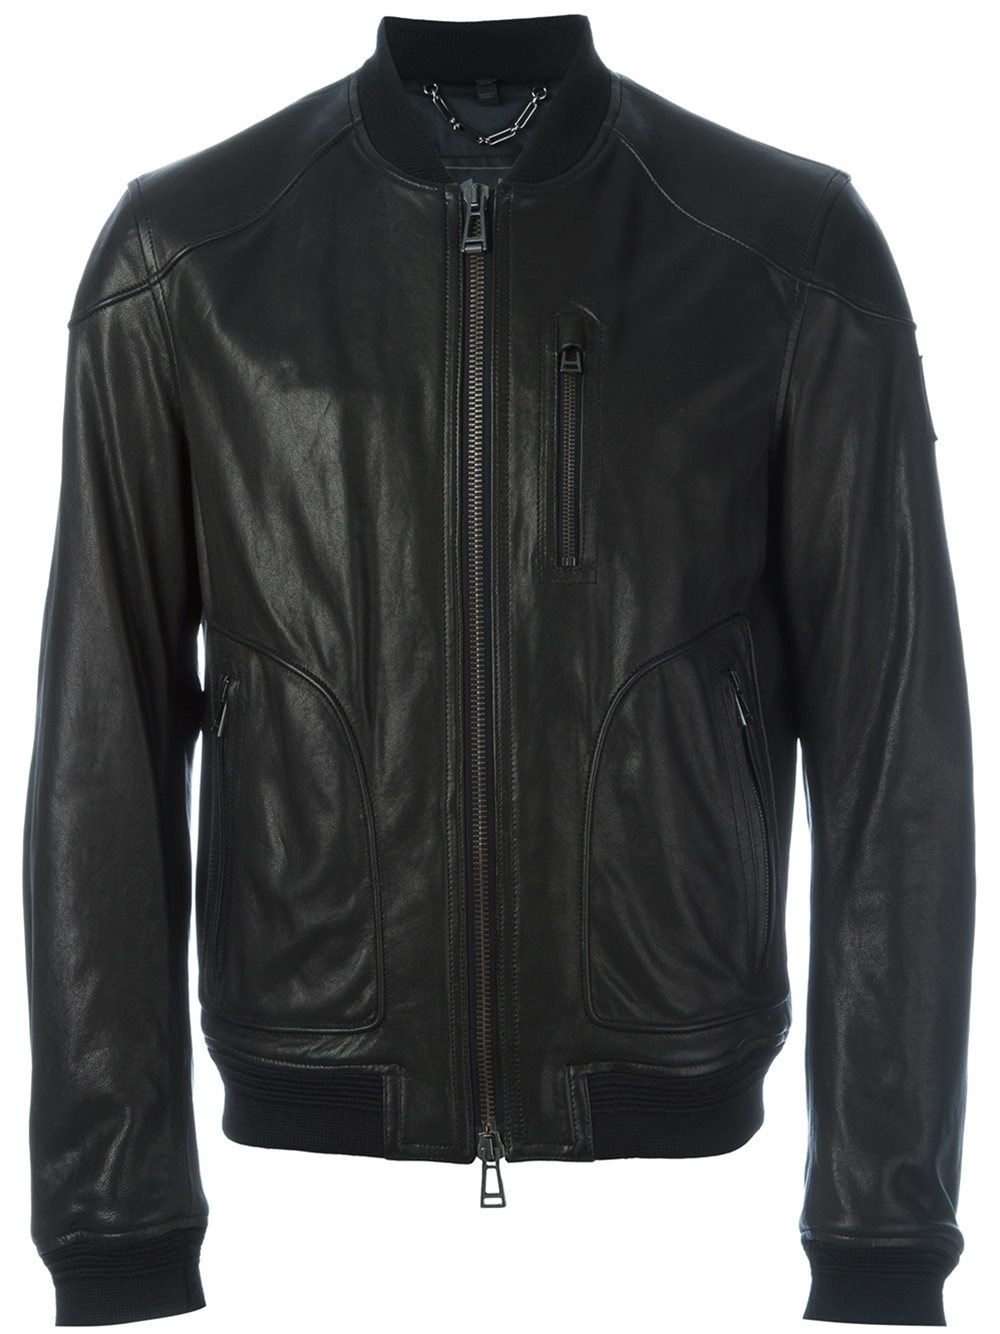 Lyst - Belstaff Leather Bomber Jacket in Black for Men